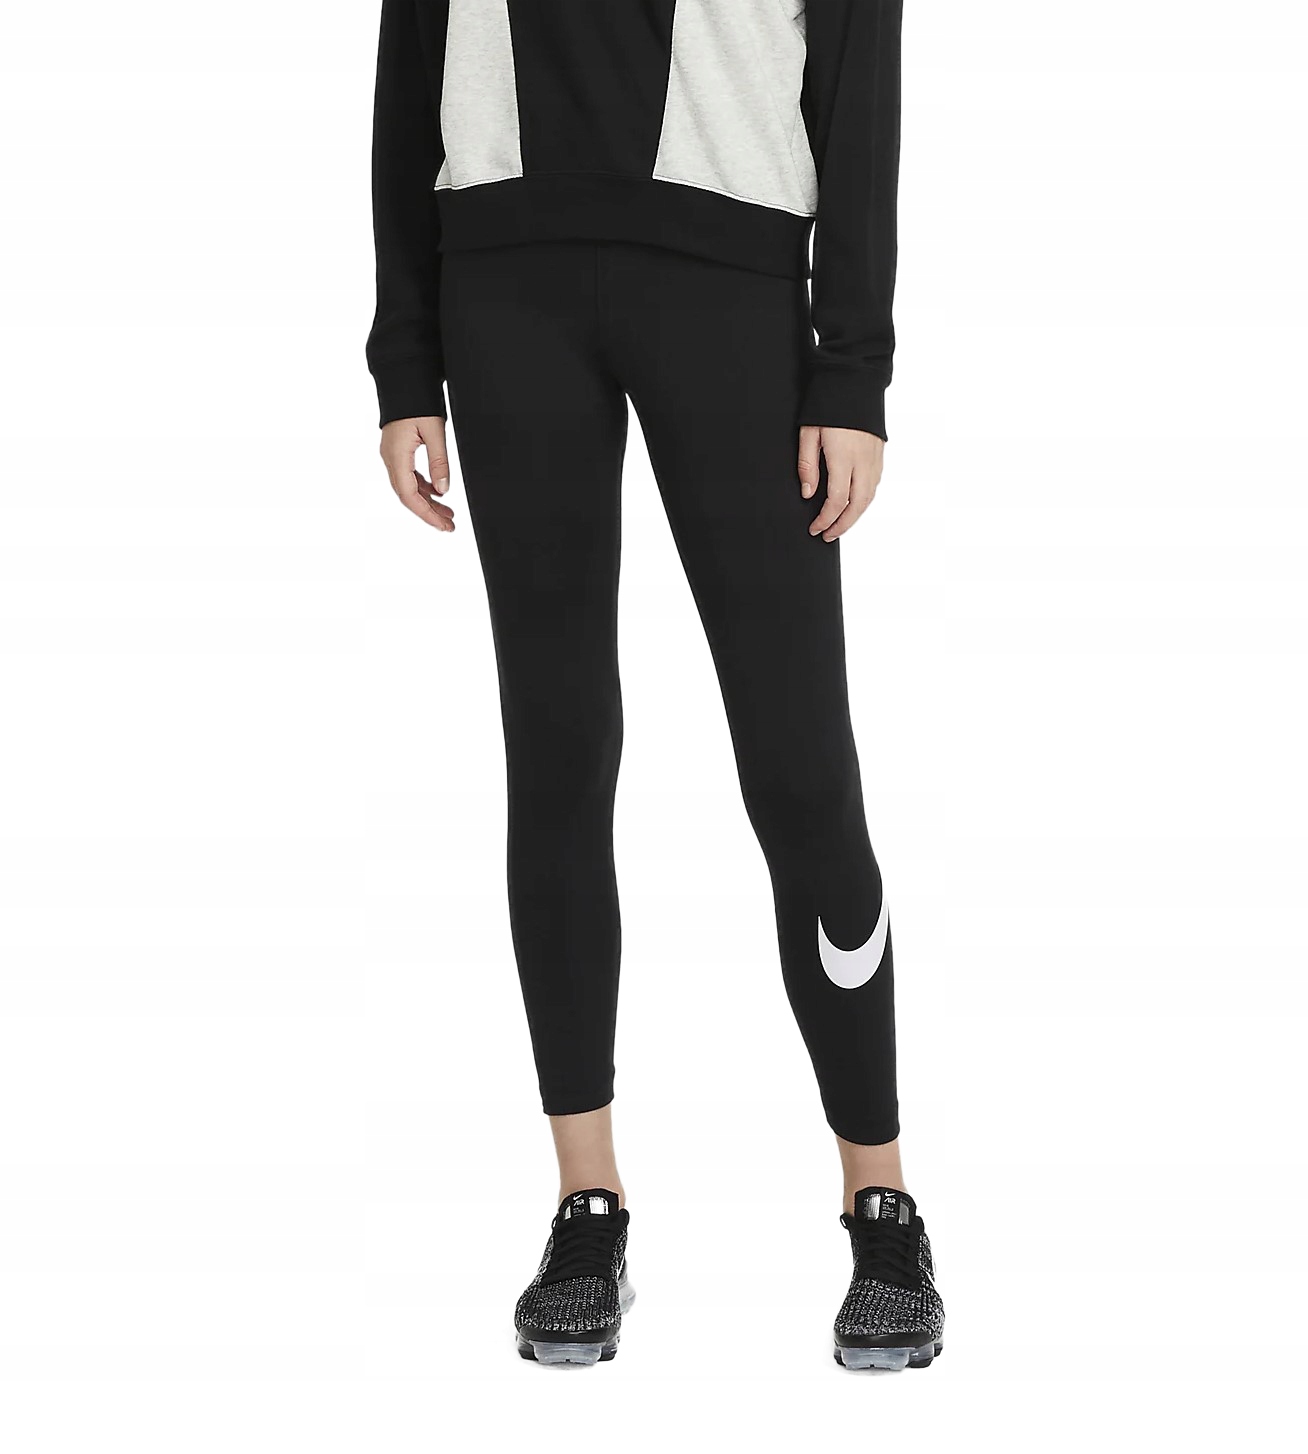 Legginsy Nike Sportswear Essential CZ8530-010 damskie, czarne